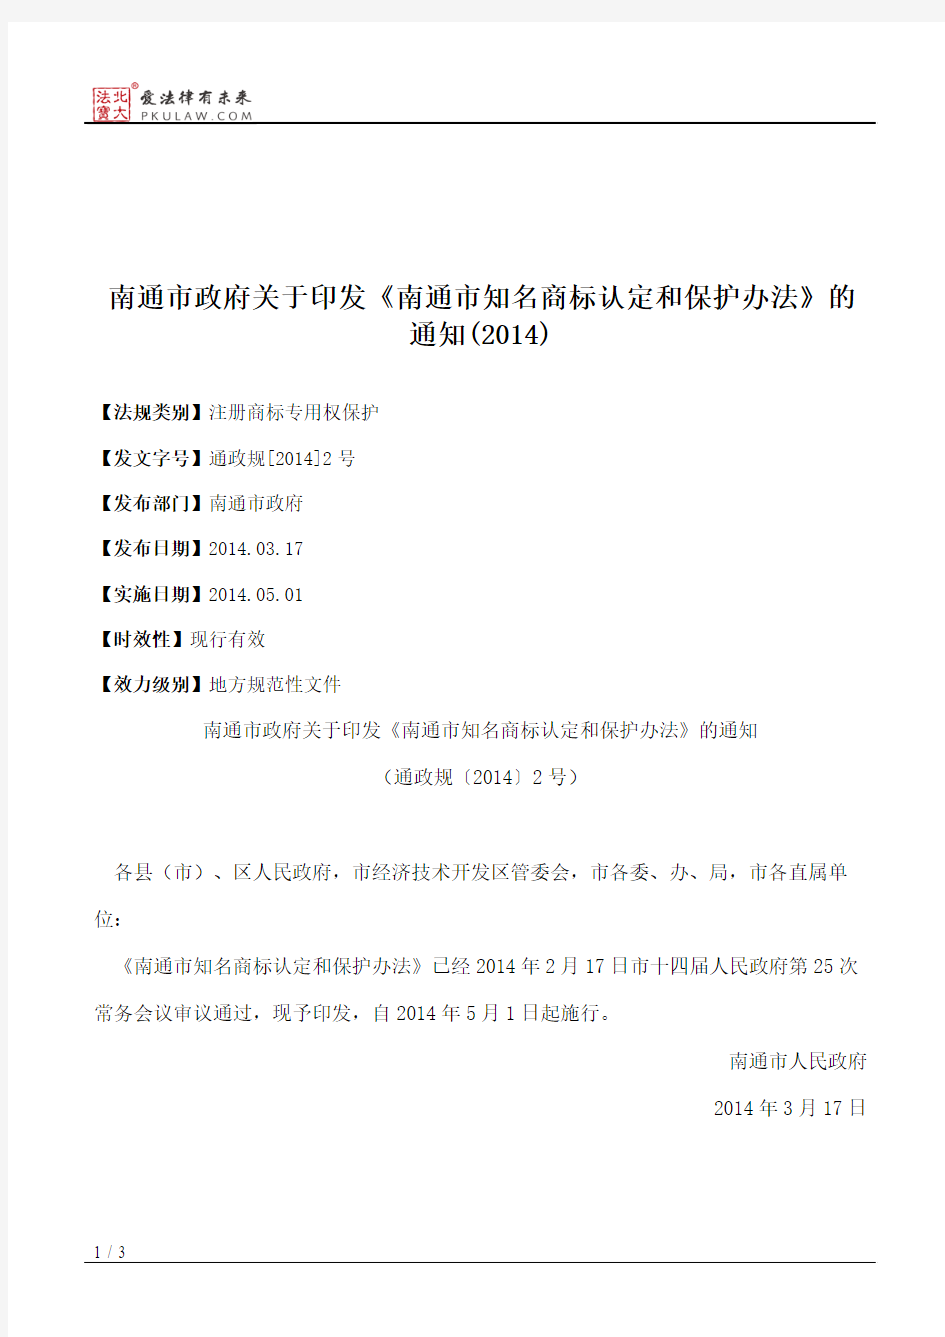 南通市政府关于印发《南通市知名商标认定和保护办法》的通知(2014)